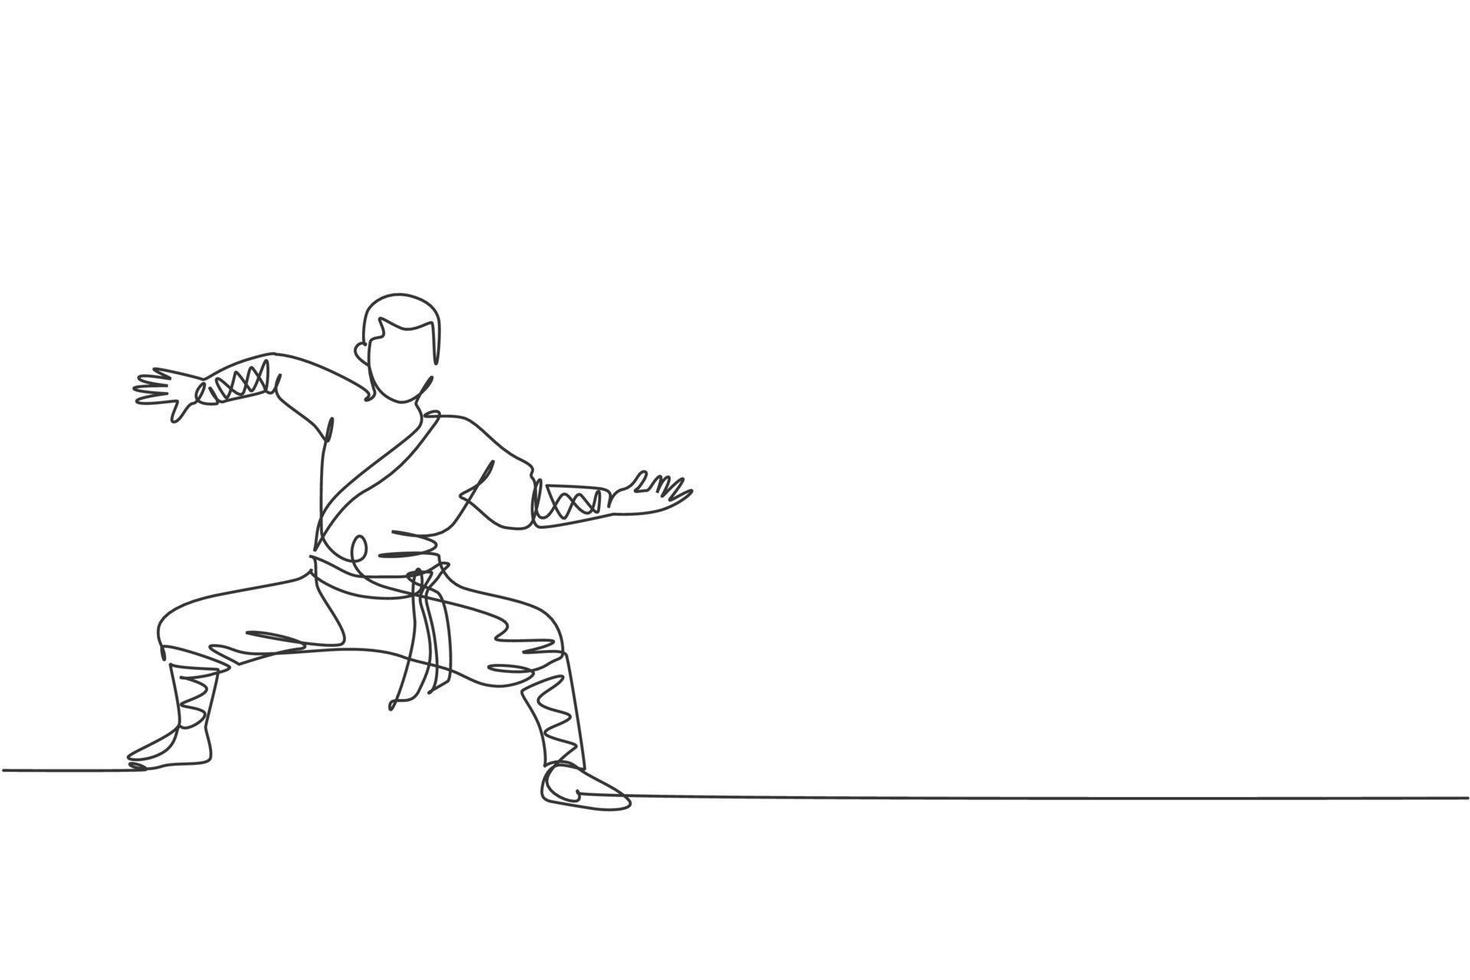 en kontinuerlig linjeteckning av ung shaolin-munk man tränar kung fu-stil på tempelplatsen. traditionell kinesisk stridssportkoncept. dynamisk enda rad rita design vektorgrafisk illustration vektor